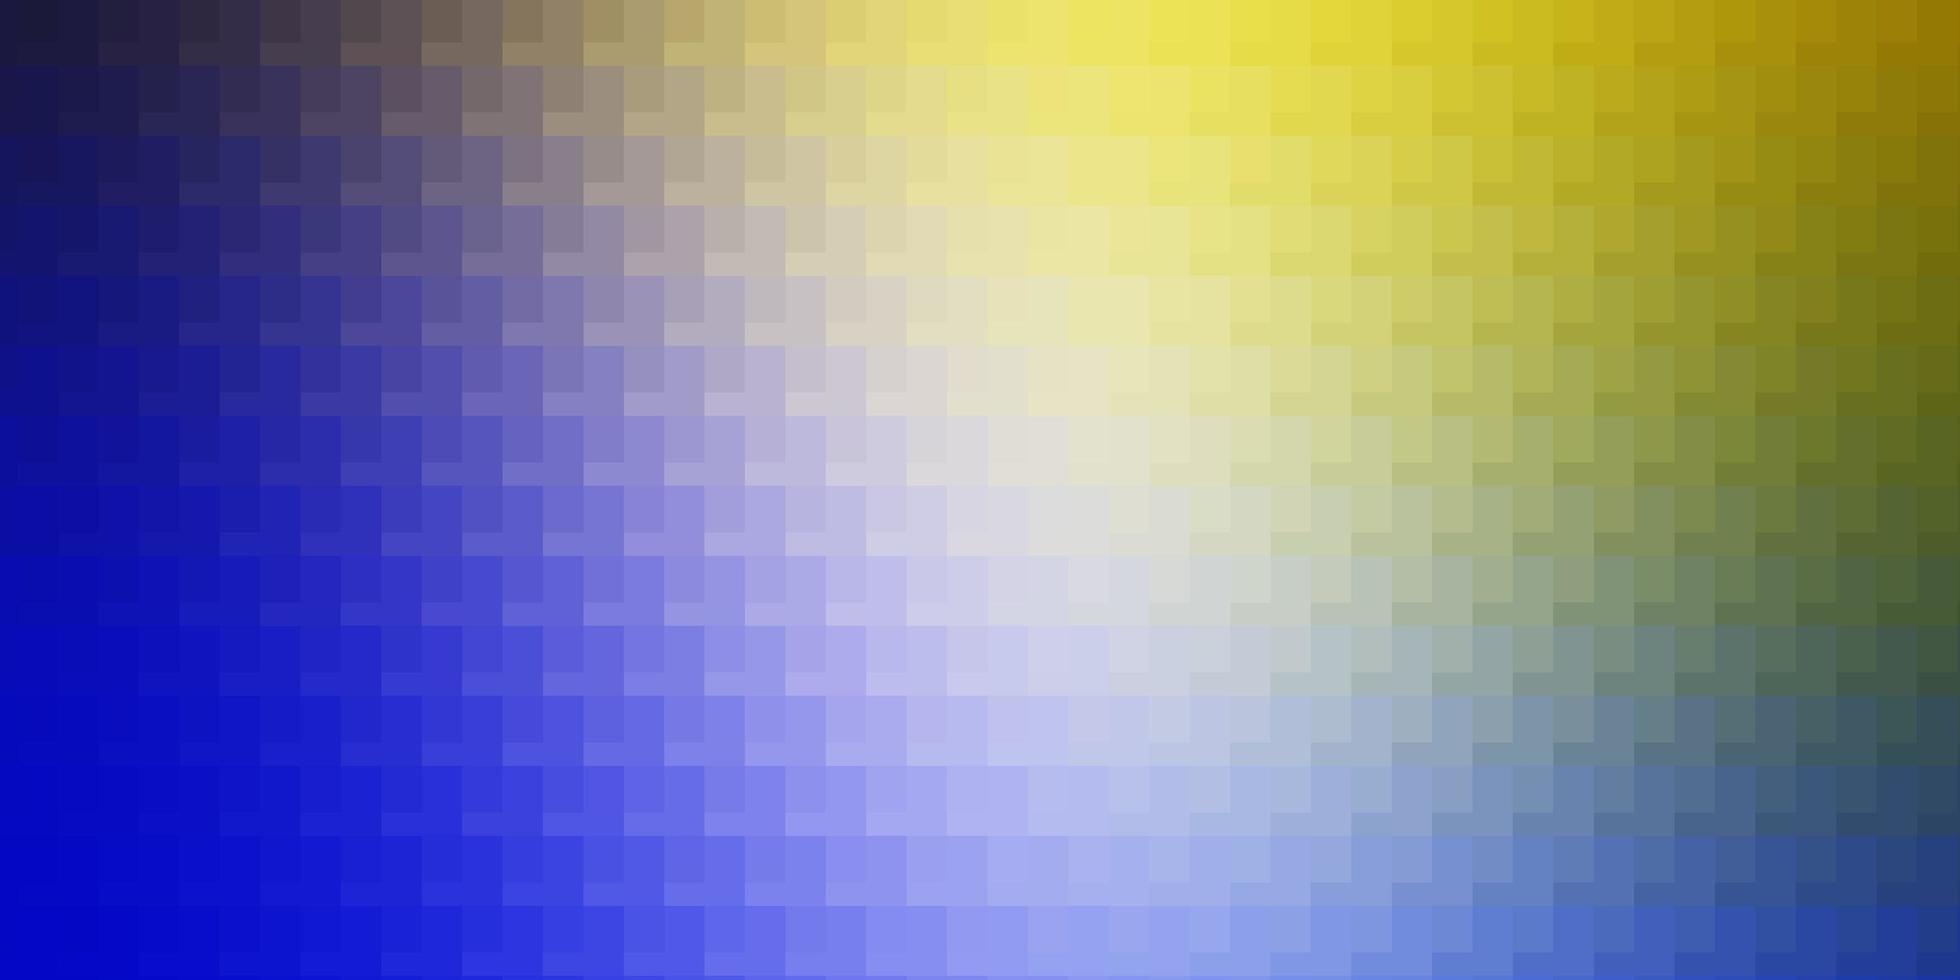 patrón de vector amarillo azul claro en ilustración de degradado abstracto de estilo cuadrado con plantilla moderna de rectángulos de colores para su página de destino